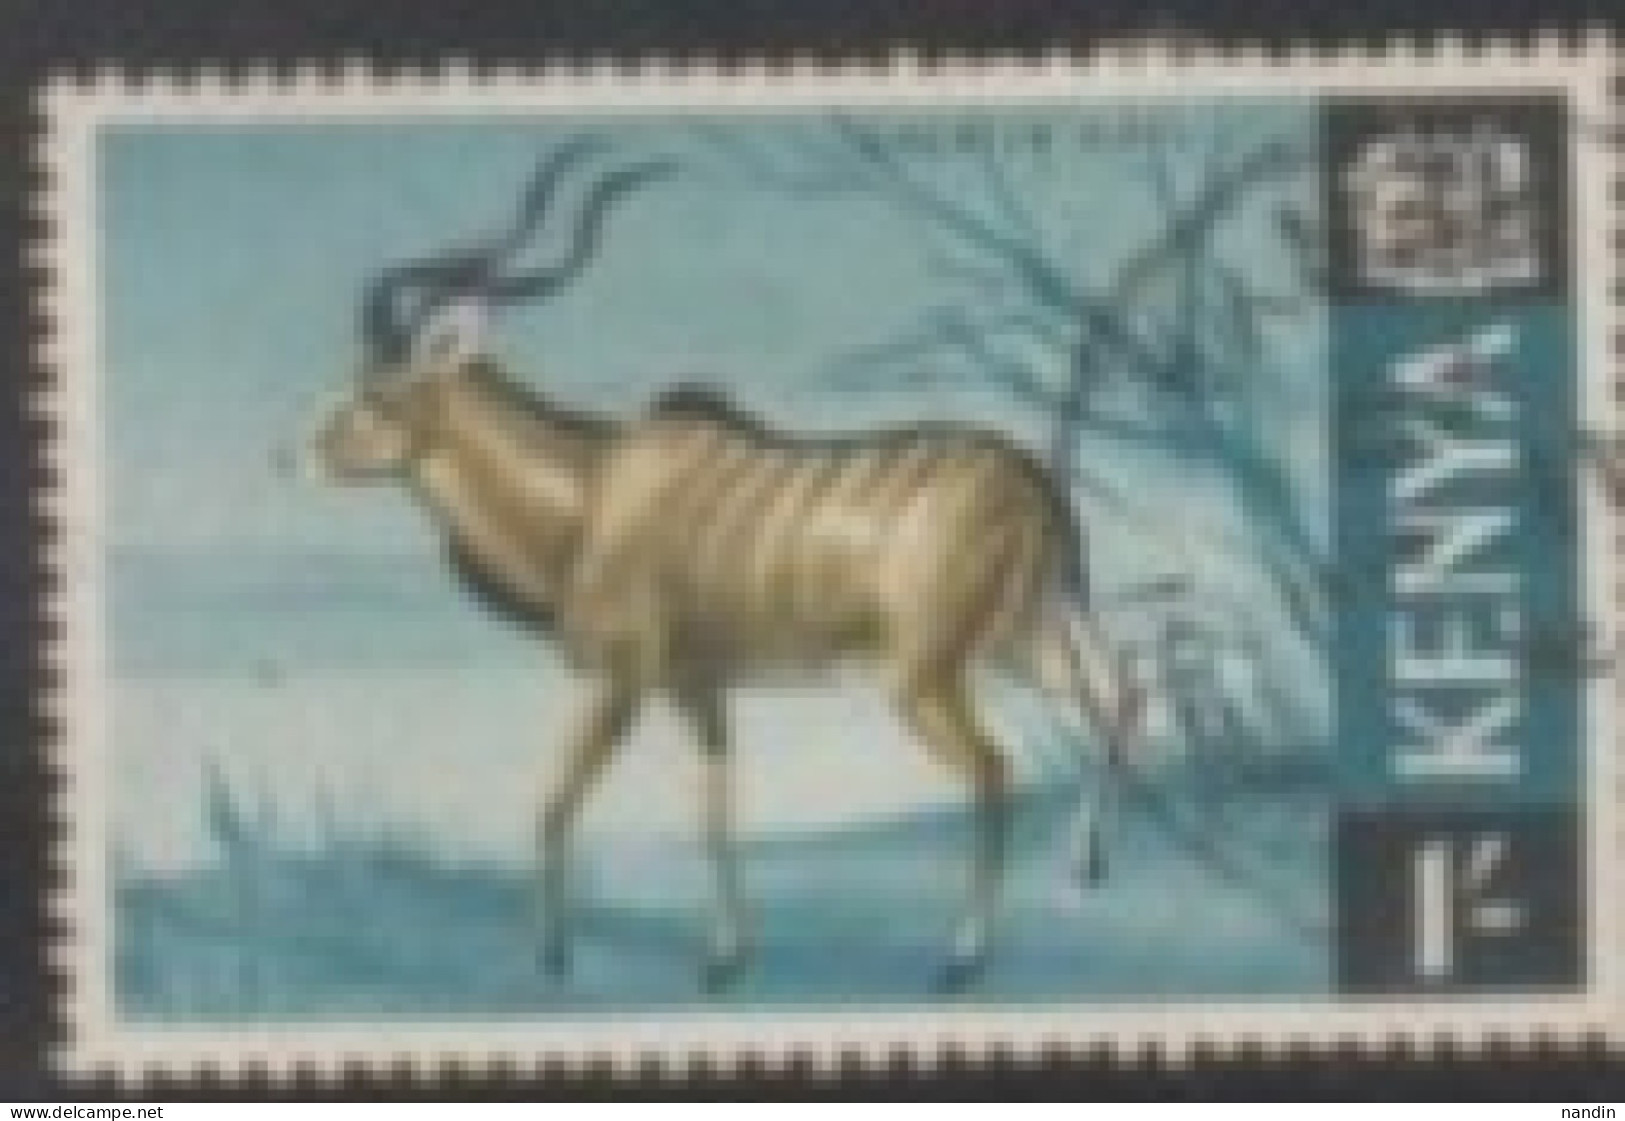 1966 KENYA STAMP USED On Wild Life/Fauna/Mammals/Strepsiceros Strepsiceros, Large Woodland Antelope - Rhinozerosse